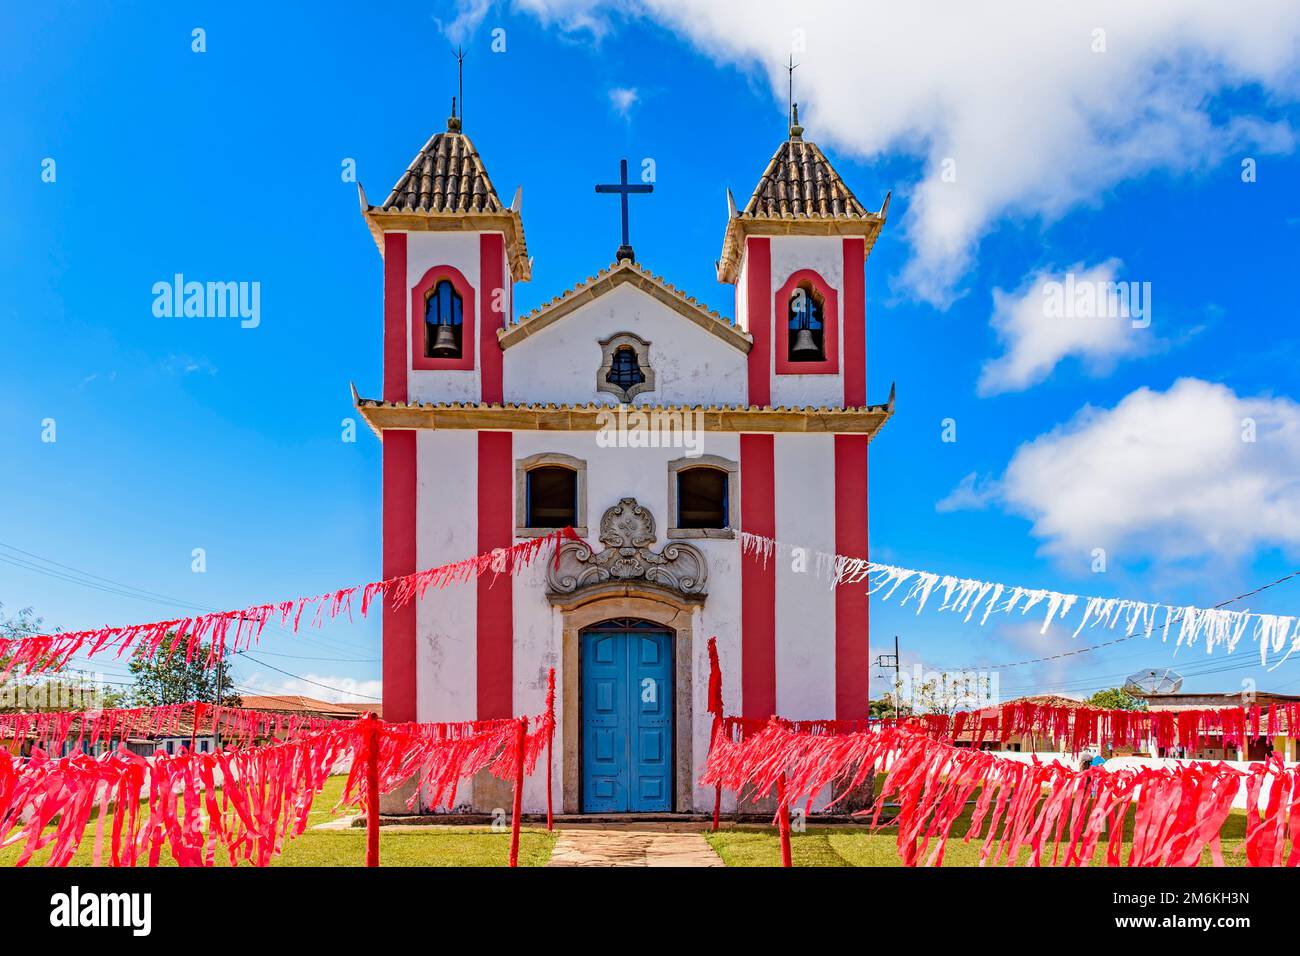 Piccola cappella in stile coloniale decorata con nastri per una celebrazione religiosa Foto Stock